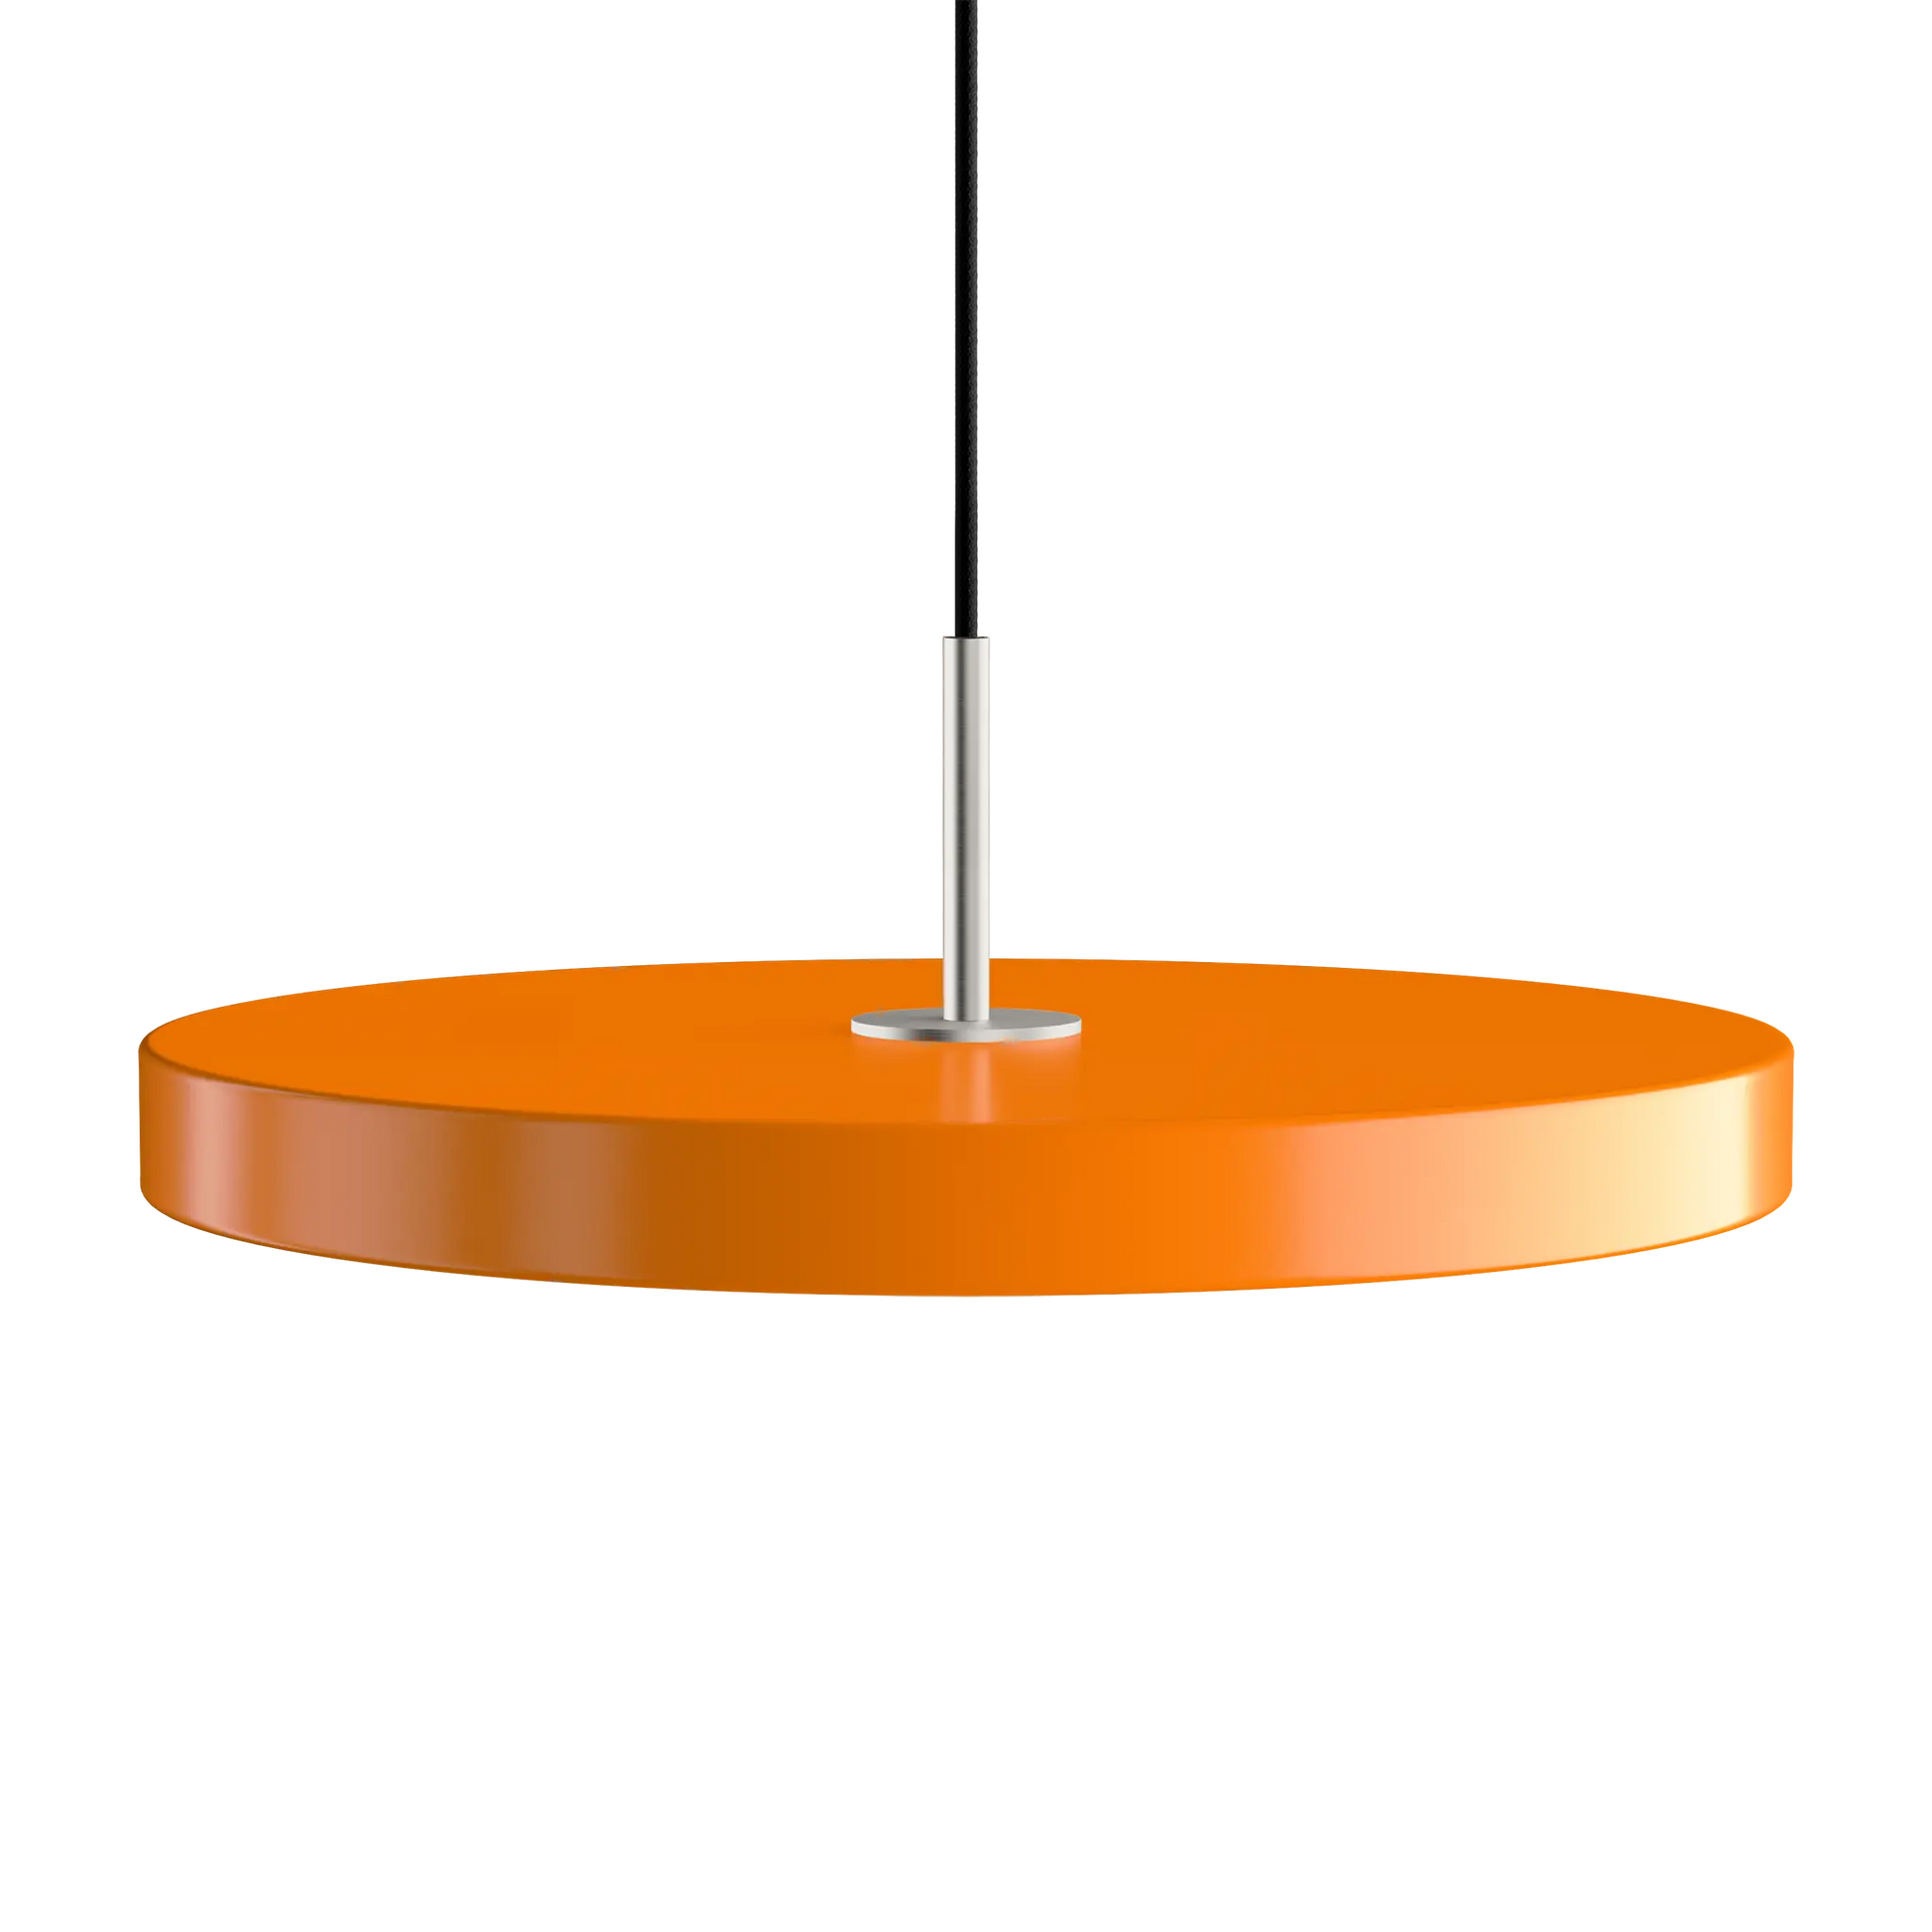 Asteria Medium taklampa med ståltop i färgen Nuance Orange från Umage